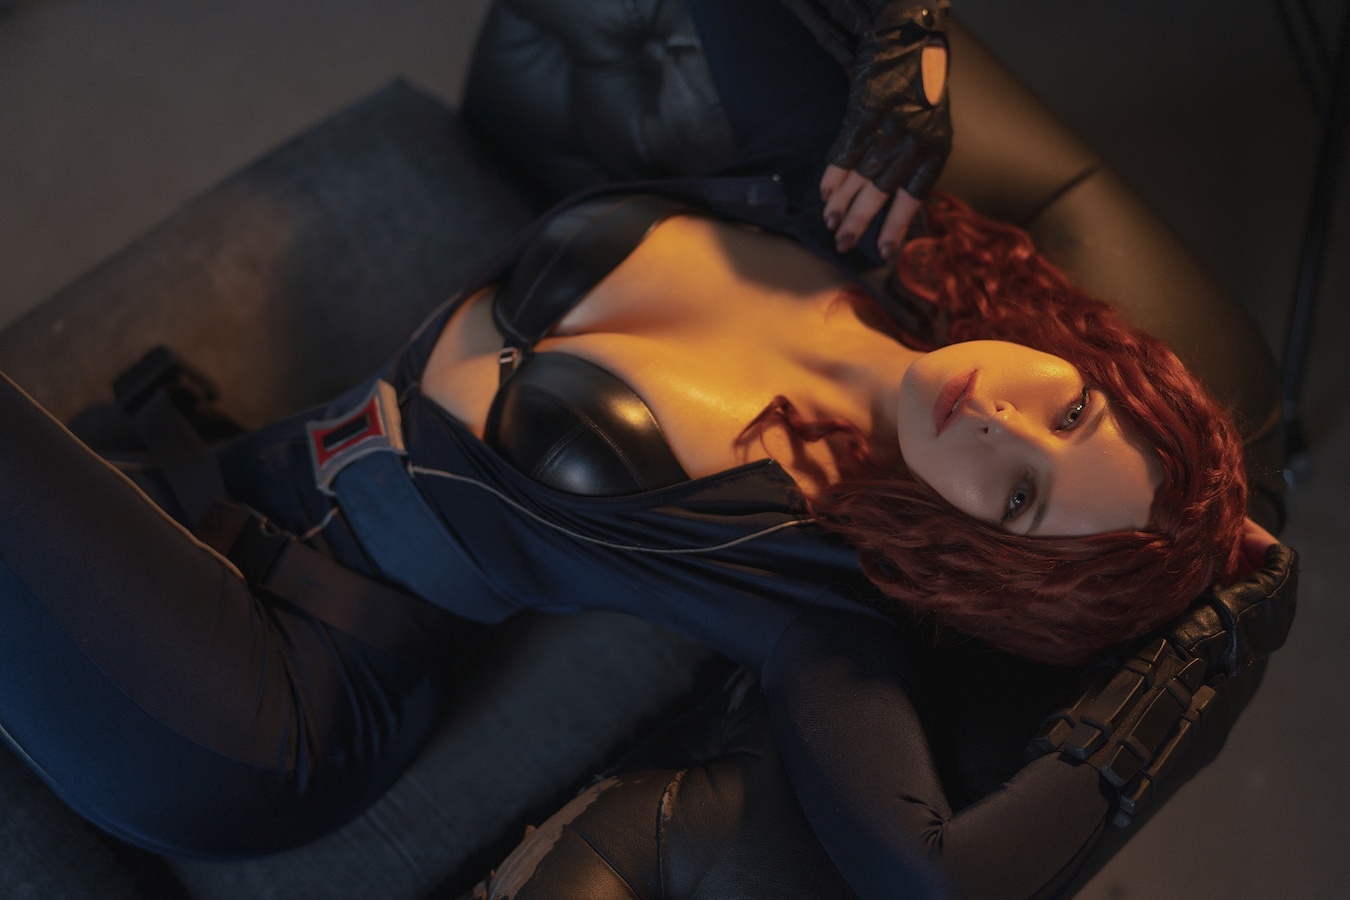 Модель выпустила интимный косплей Черной вдовы из Marvel - не хуже Скарлетт Йоханссон